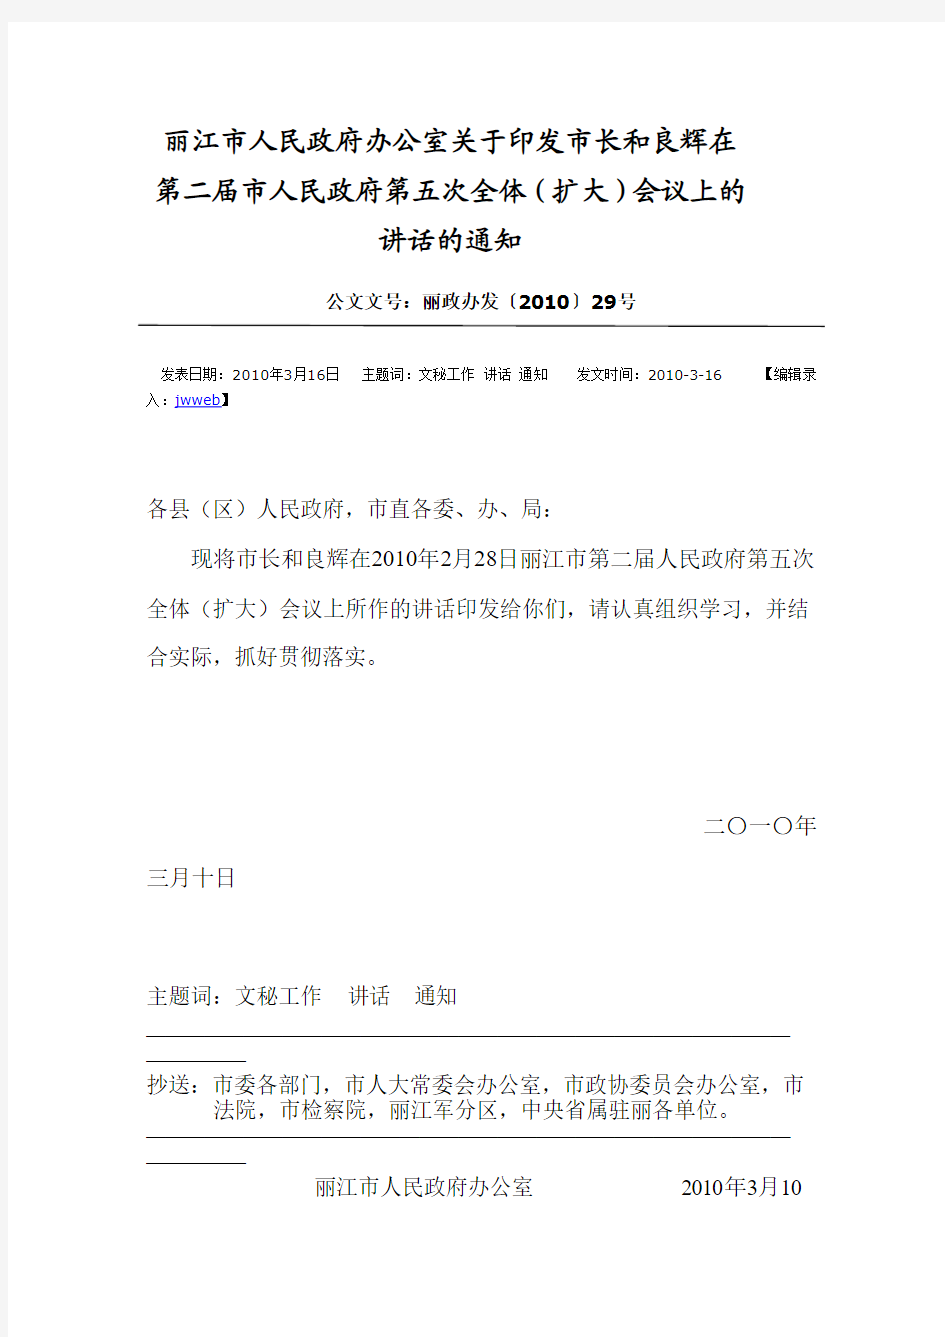 丽江市人民政府办公室关于印发市长和良辉在第二届市人民政府第五次全体